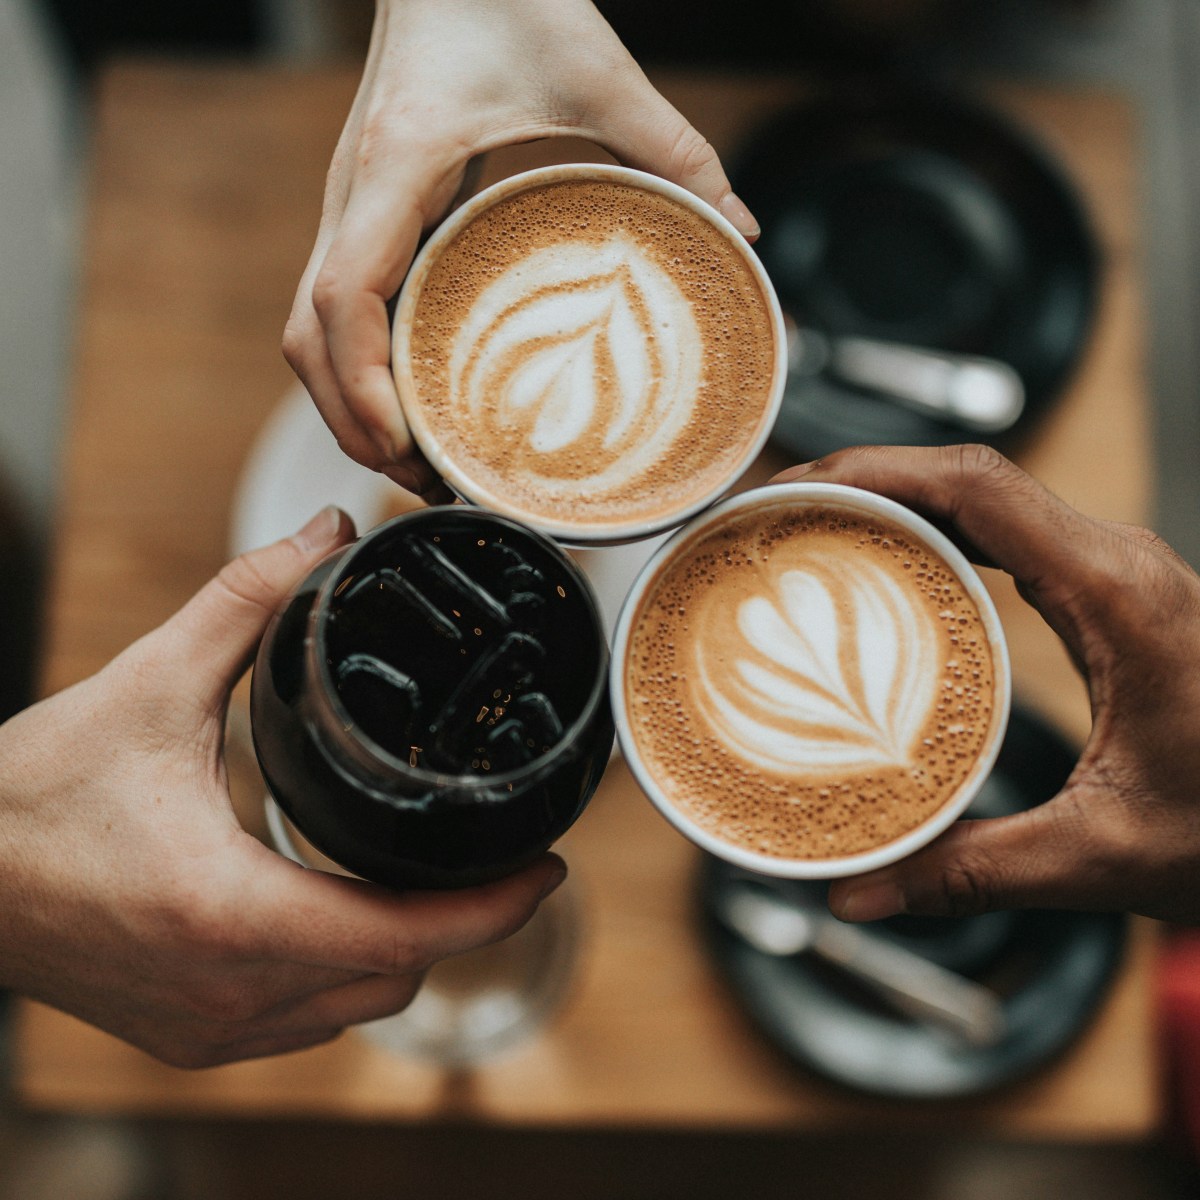 Pause café : Une habitude saine pour dynamiser votre journée de travail